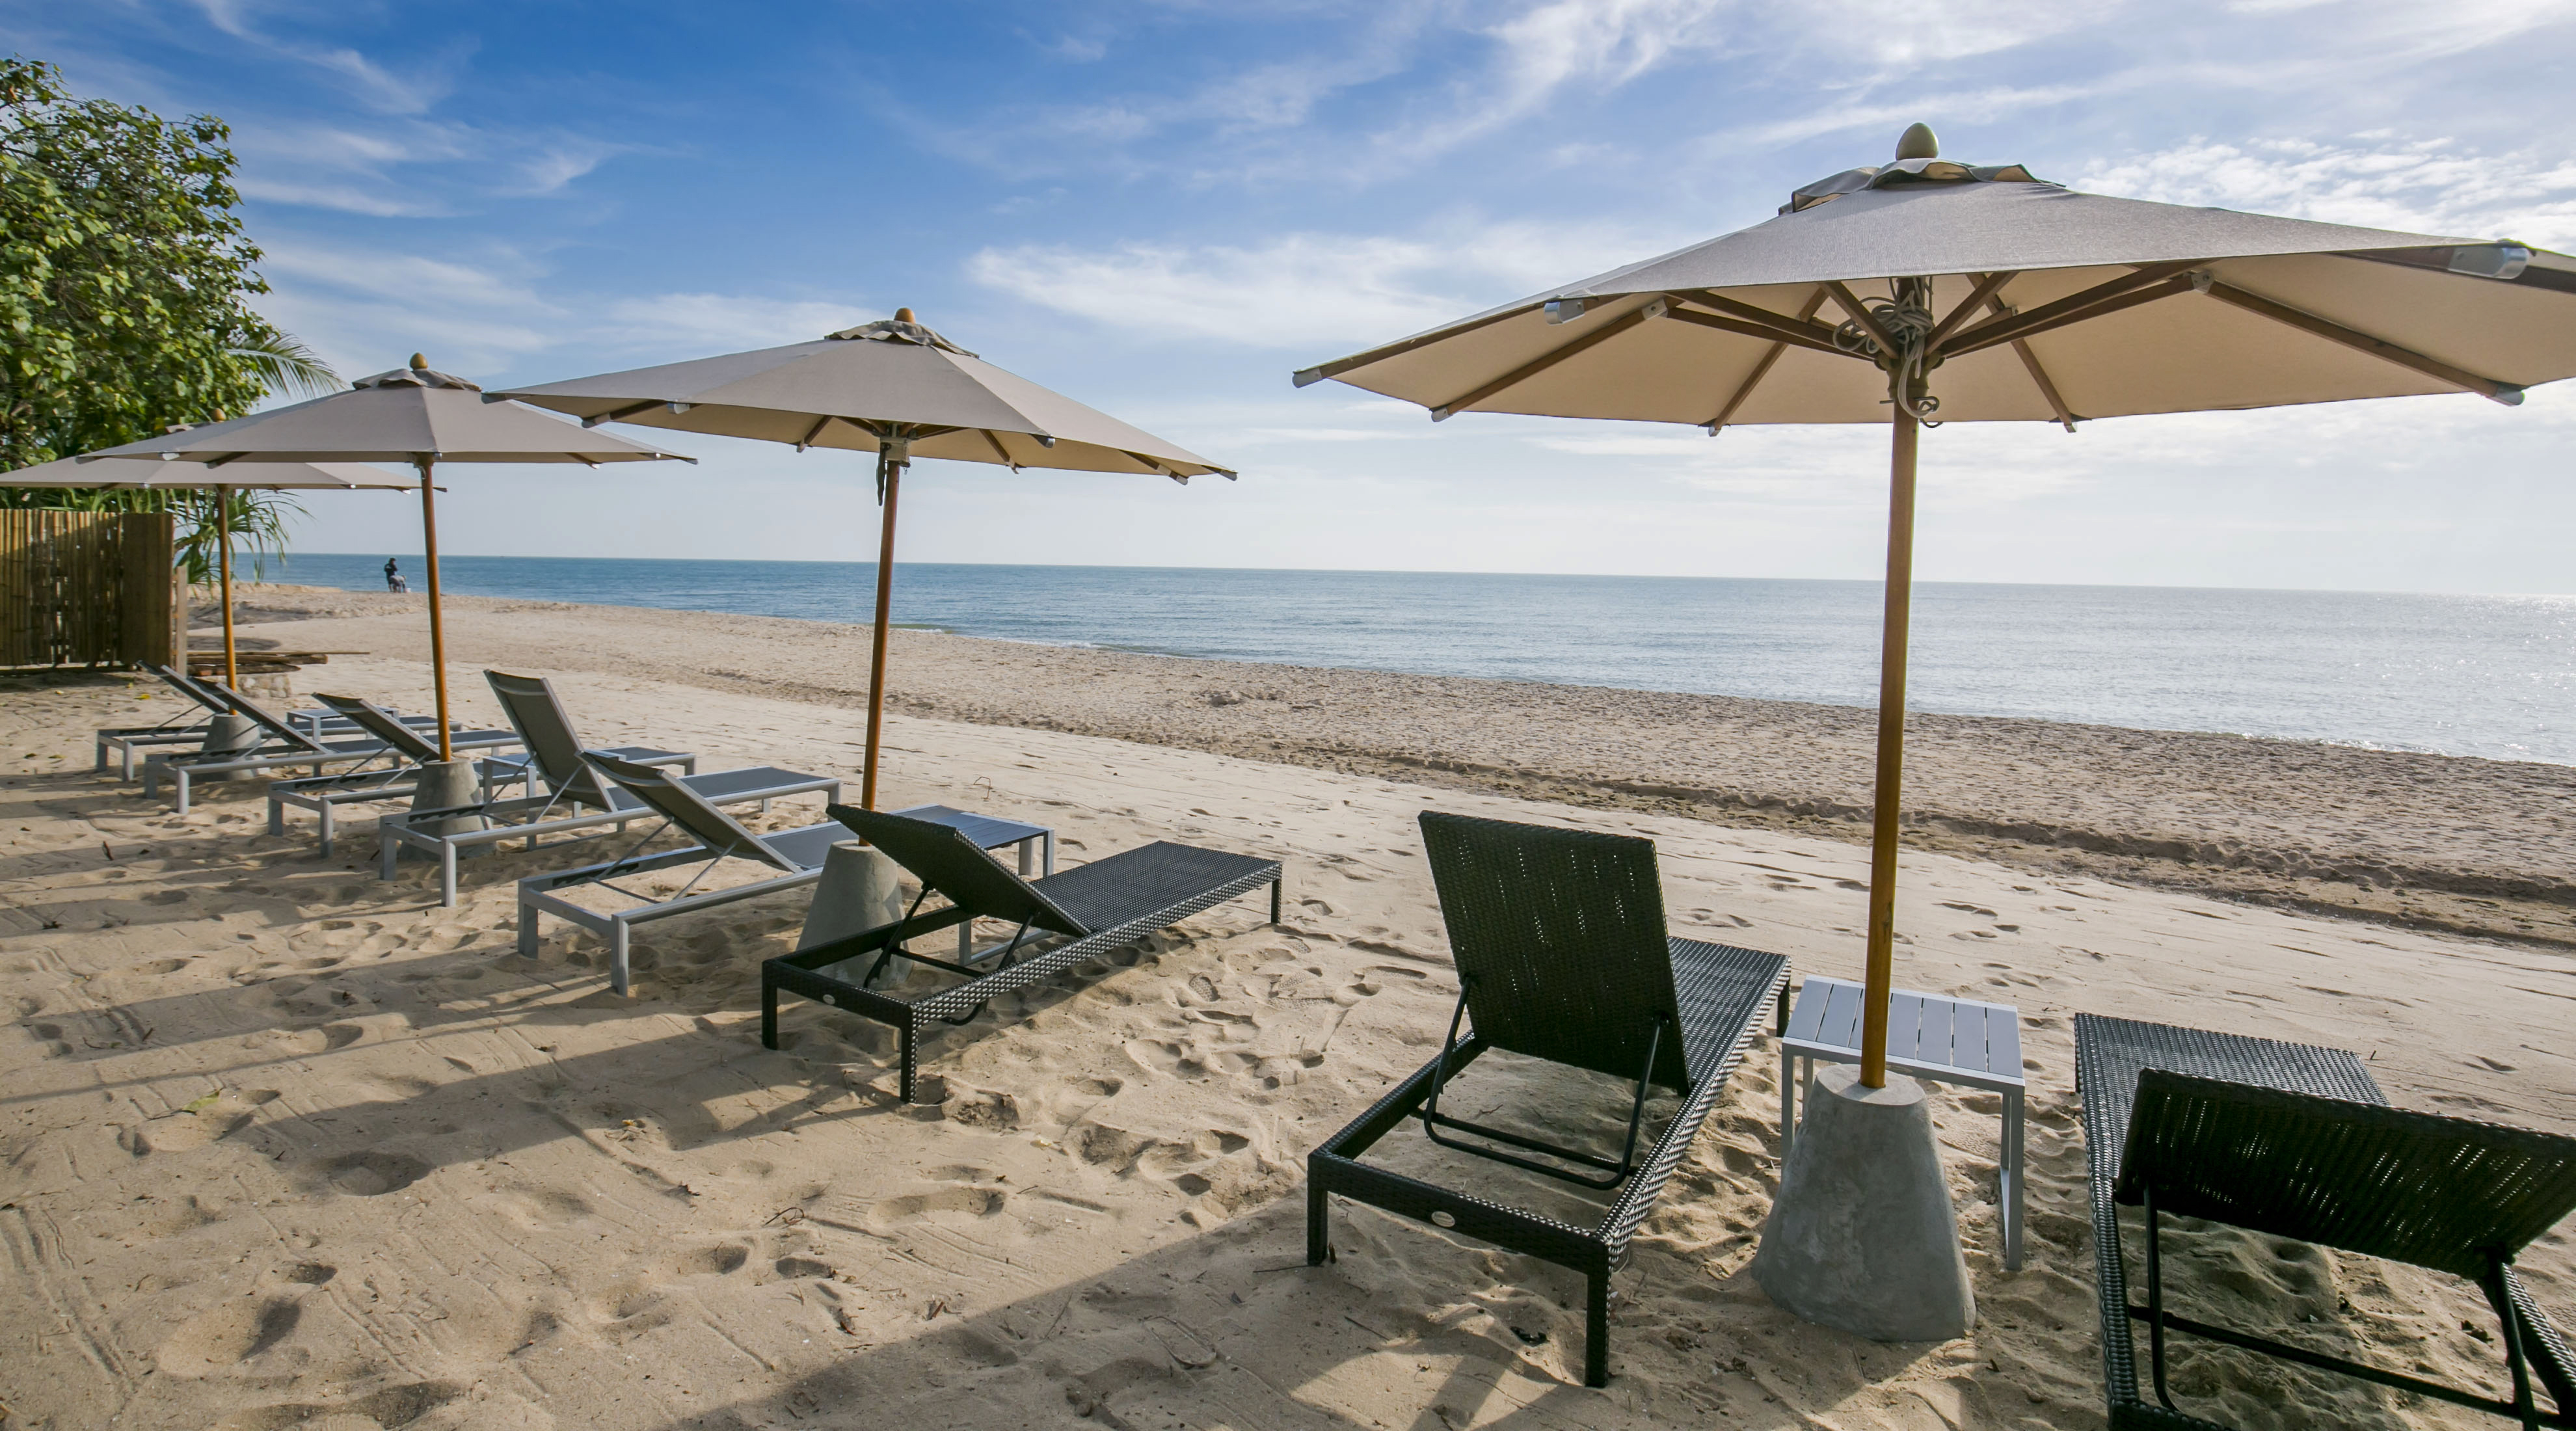 Zdjęcie Q Seaside Huahin Beach - popularne miejsce wśród znawców relaksu